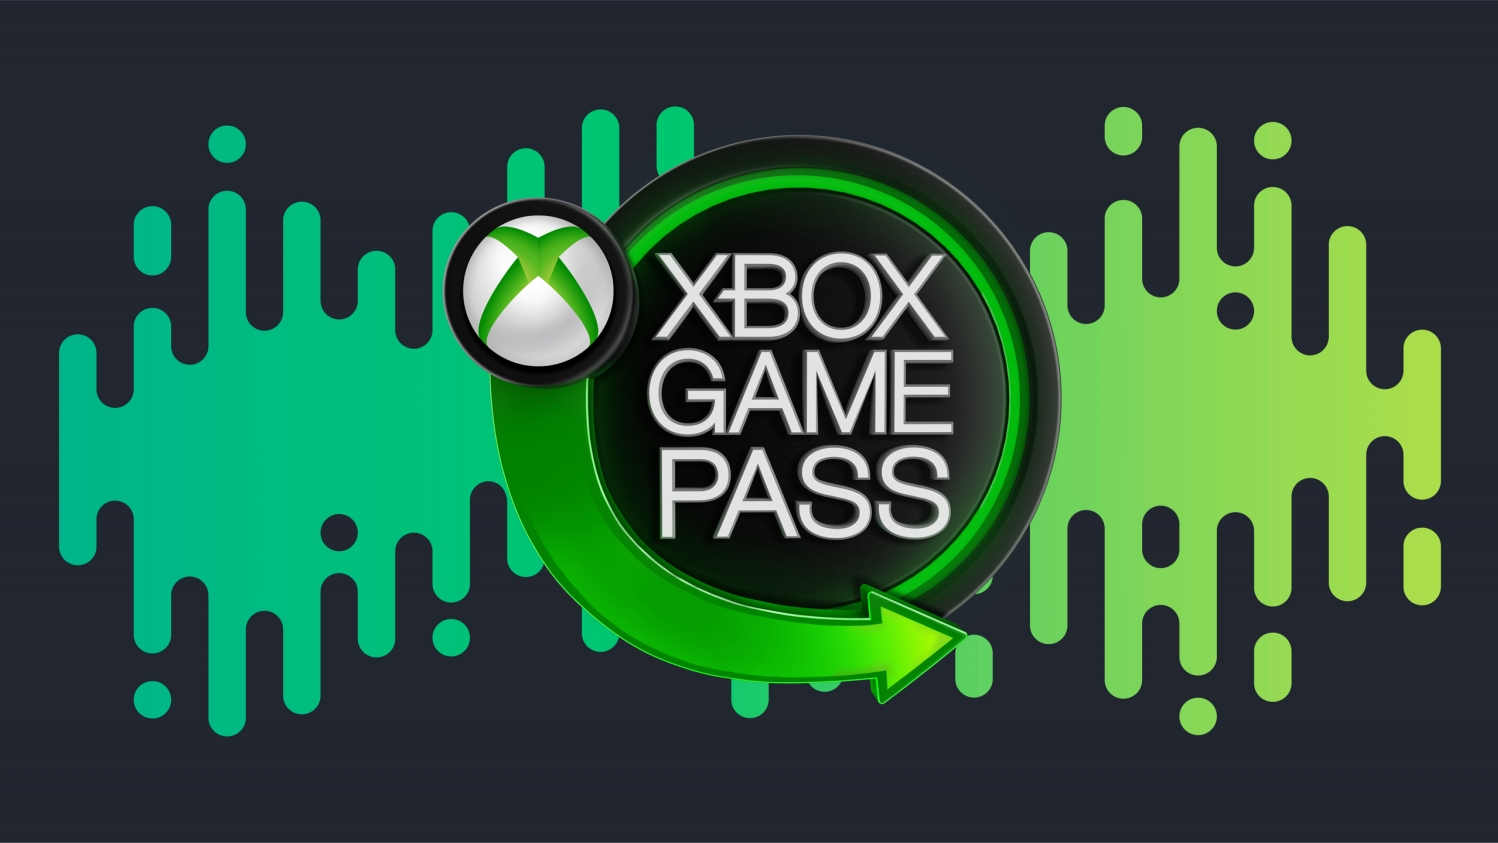 Xbox Game Pass just got a lot better